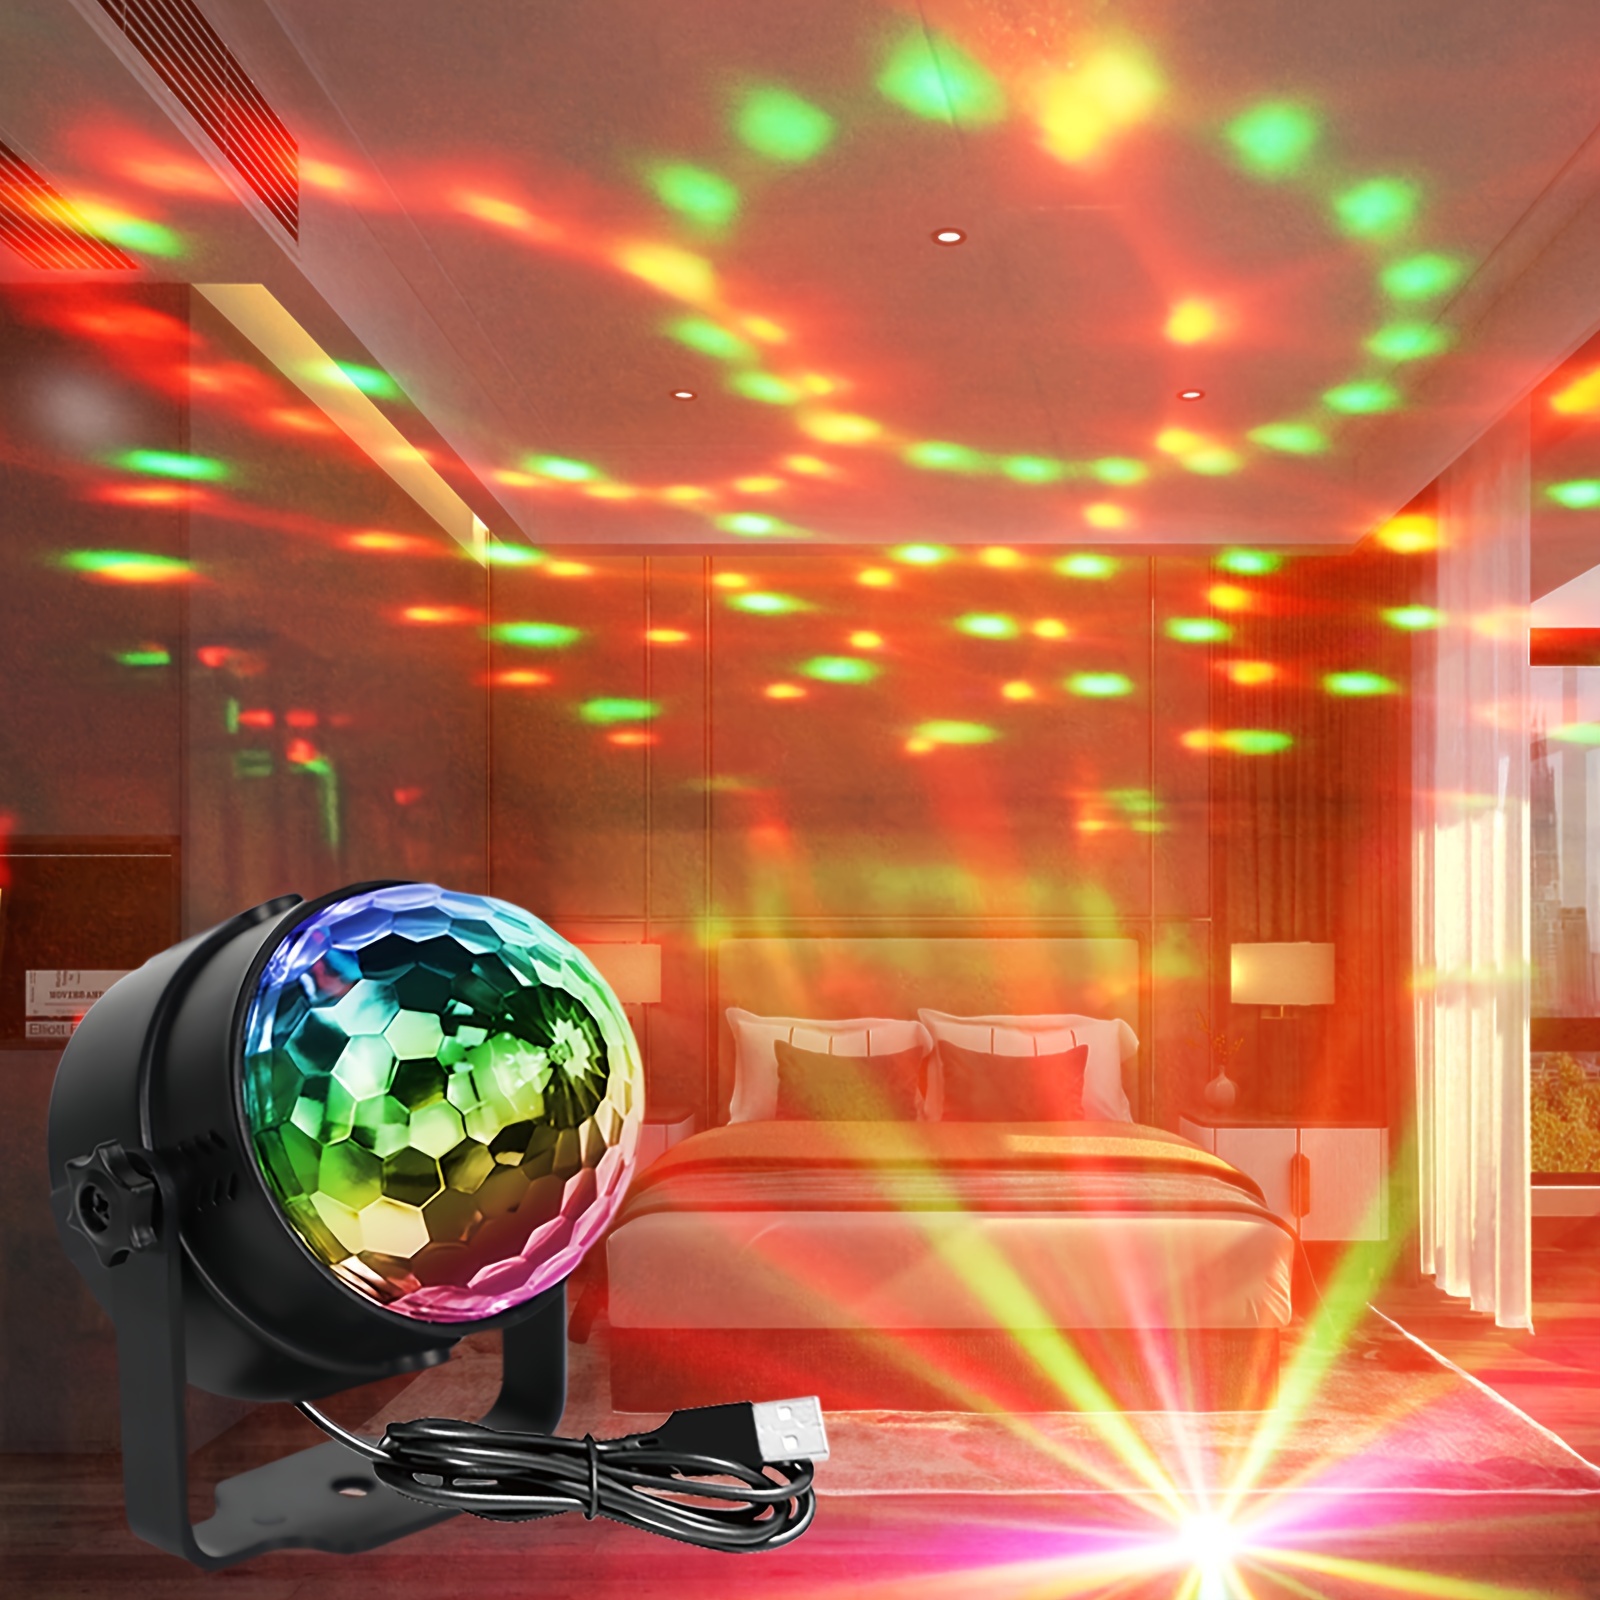 Ampoule LED Disco rotative à 360 degrés, boule magique, lampe